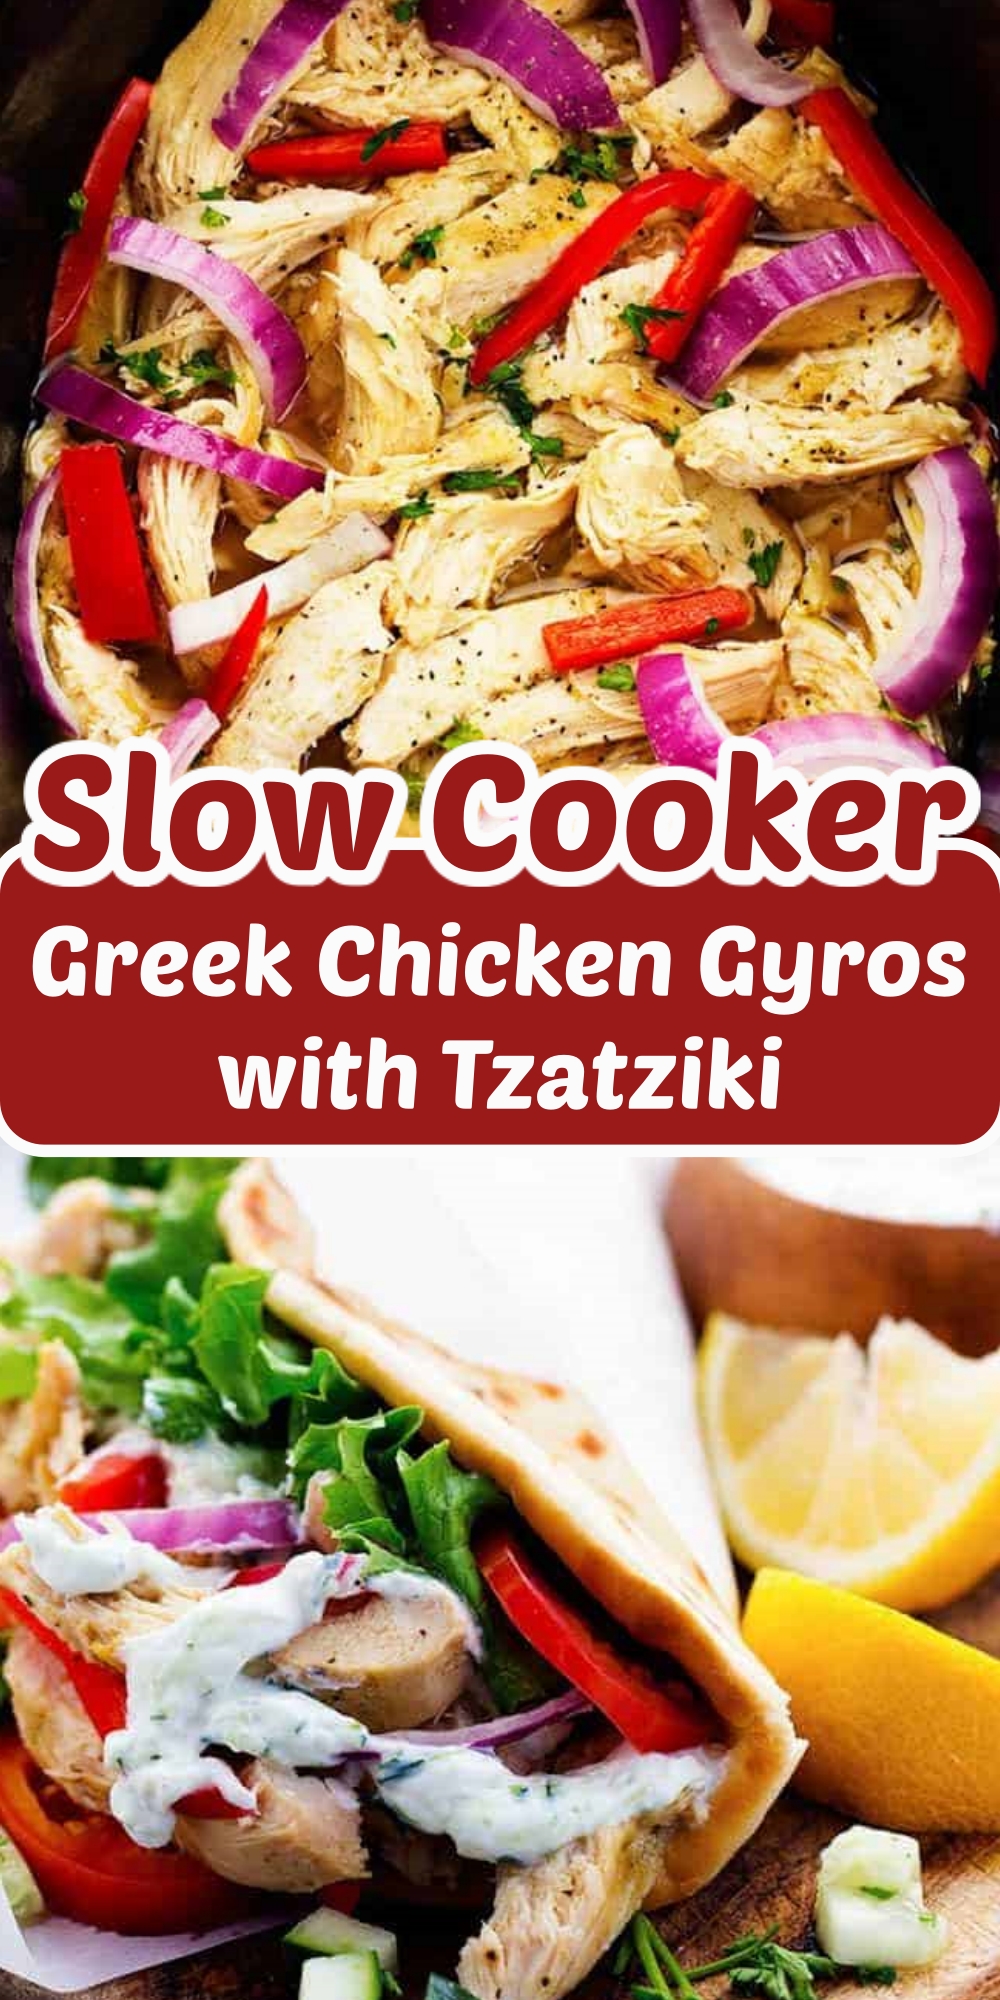 Slow Cooker Greek Chicken Gyros with Tzatziki Recipe - Cucinadeyung